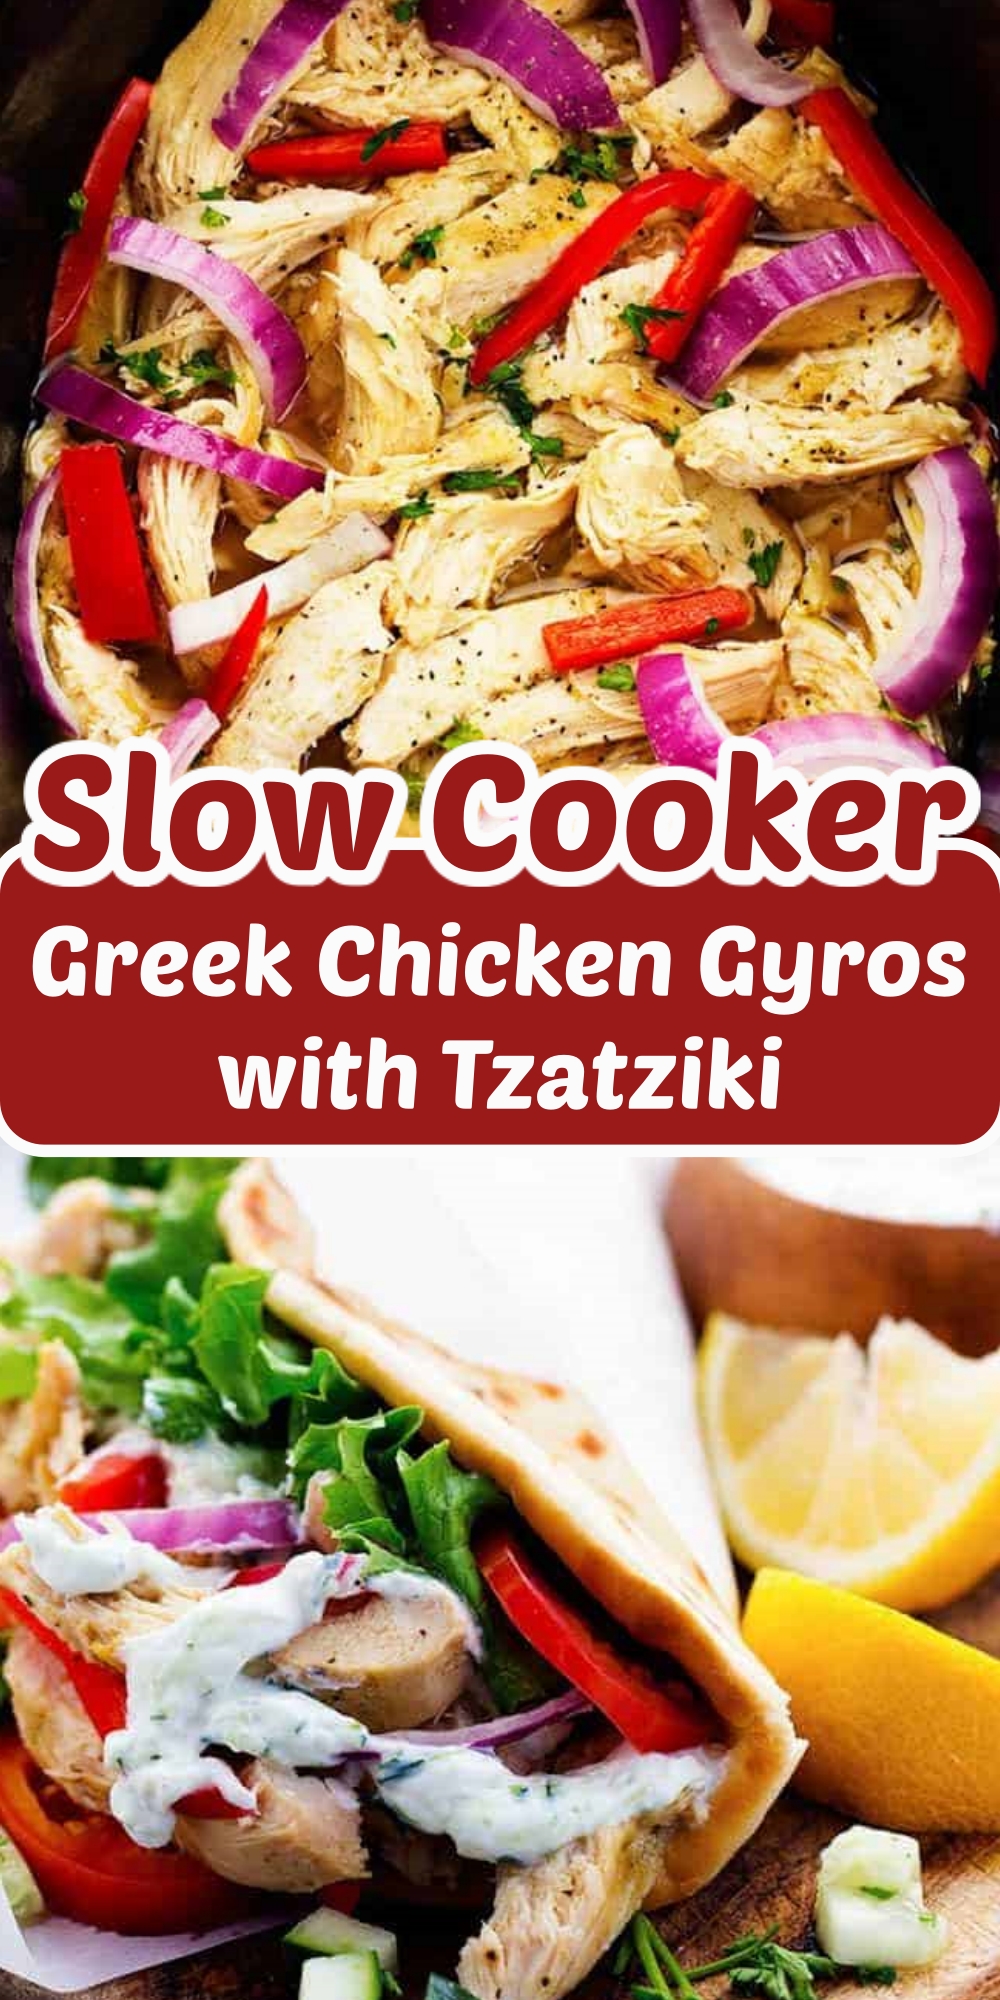 Slow Cooker Greek Chicken Gyros with Tzatziki Recipe - Cucinadeyung